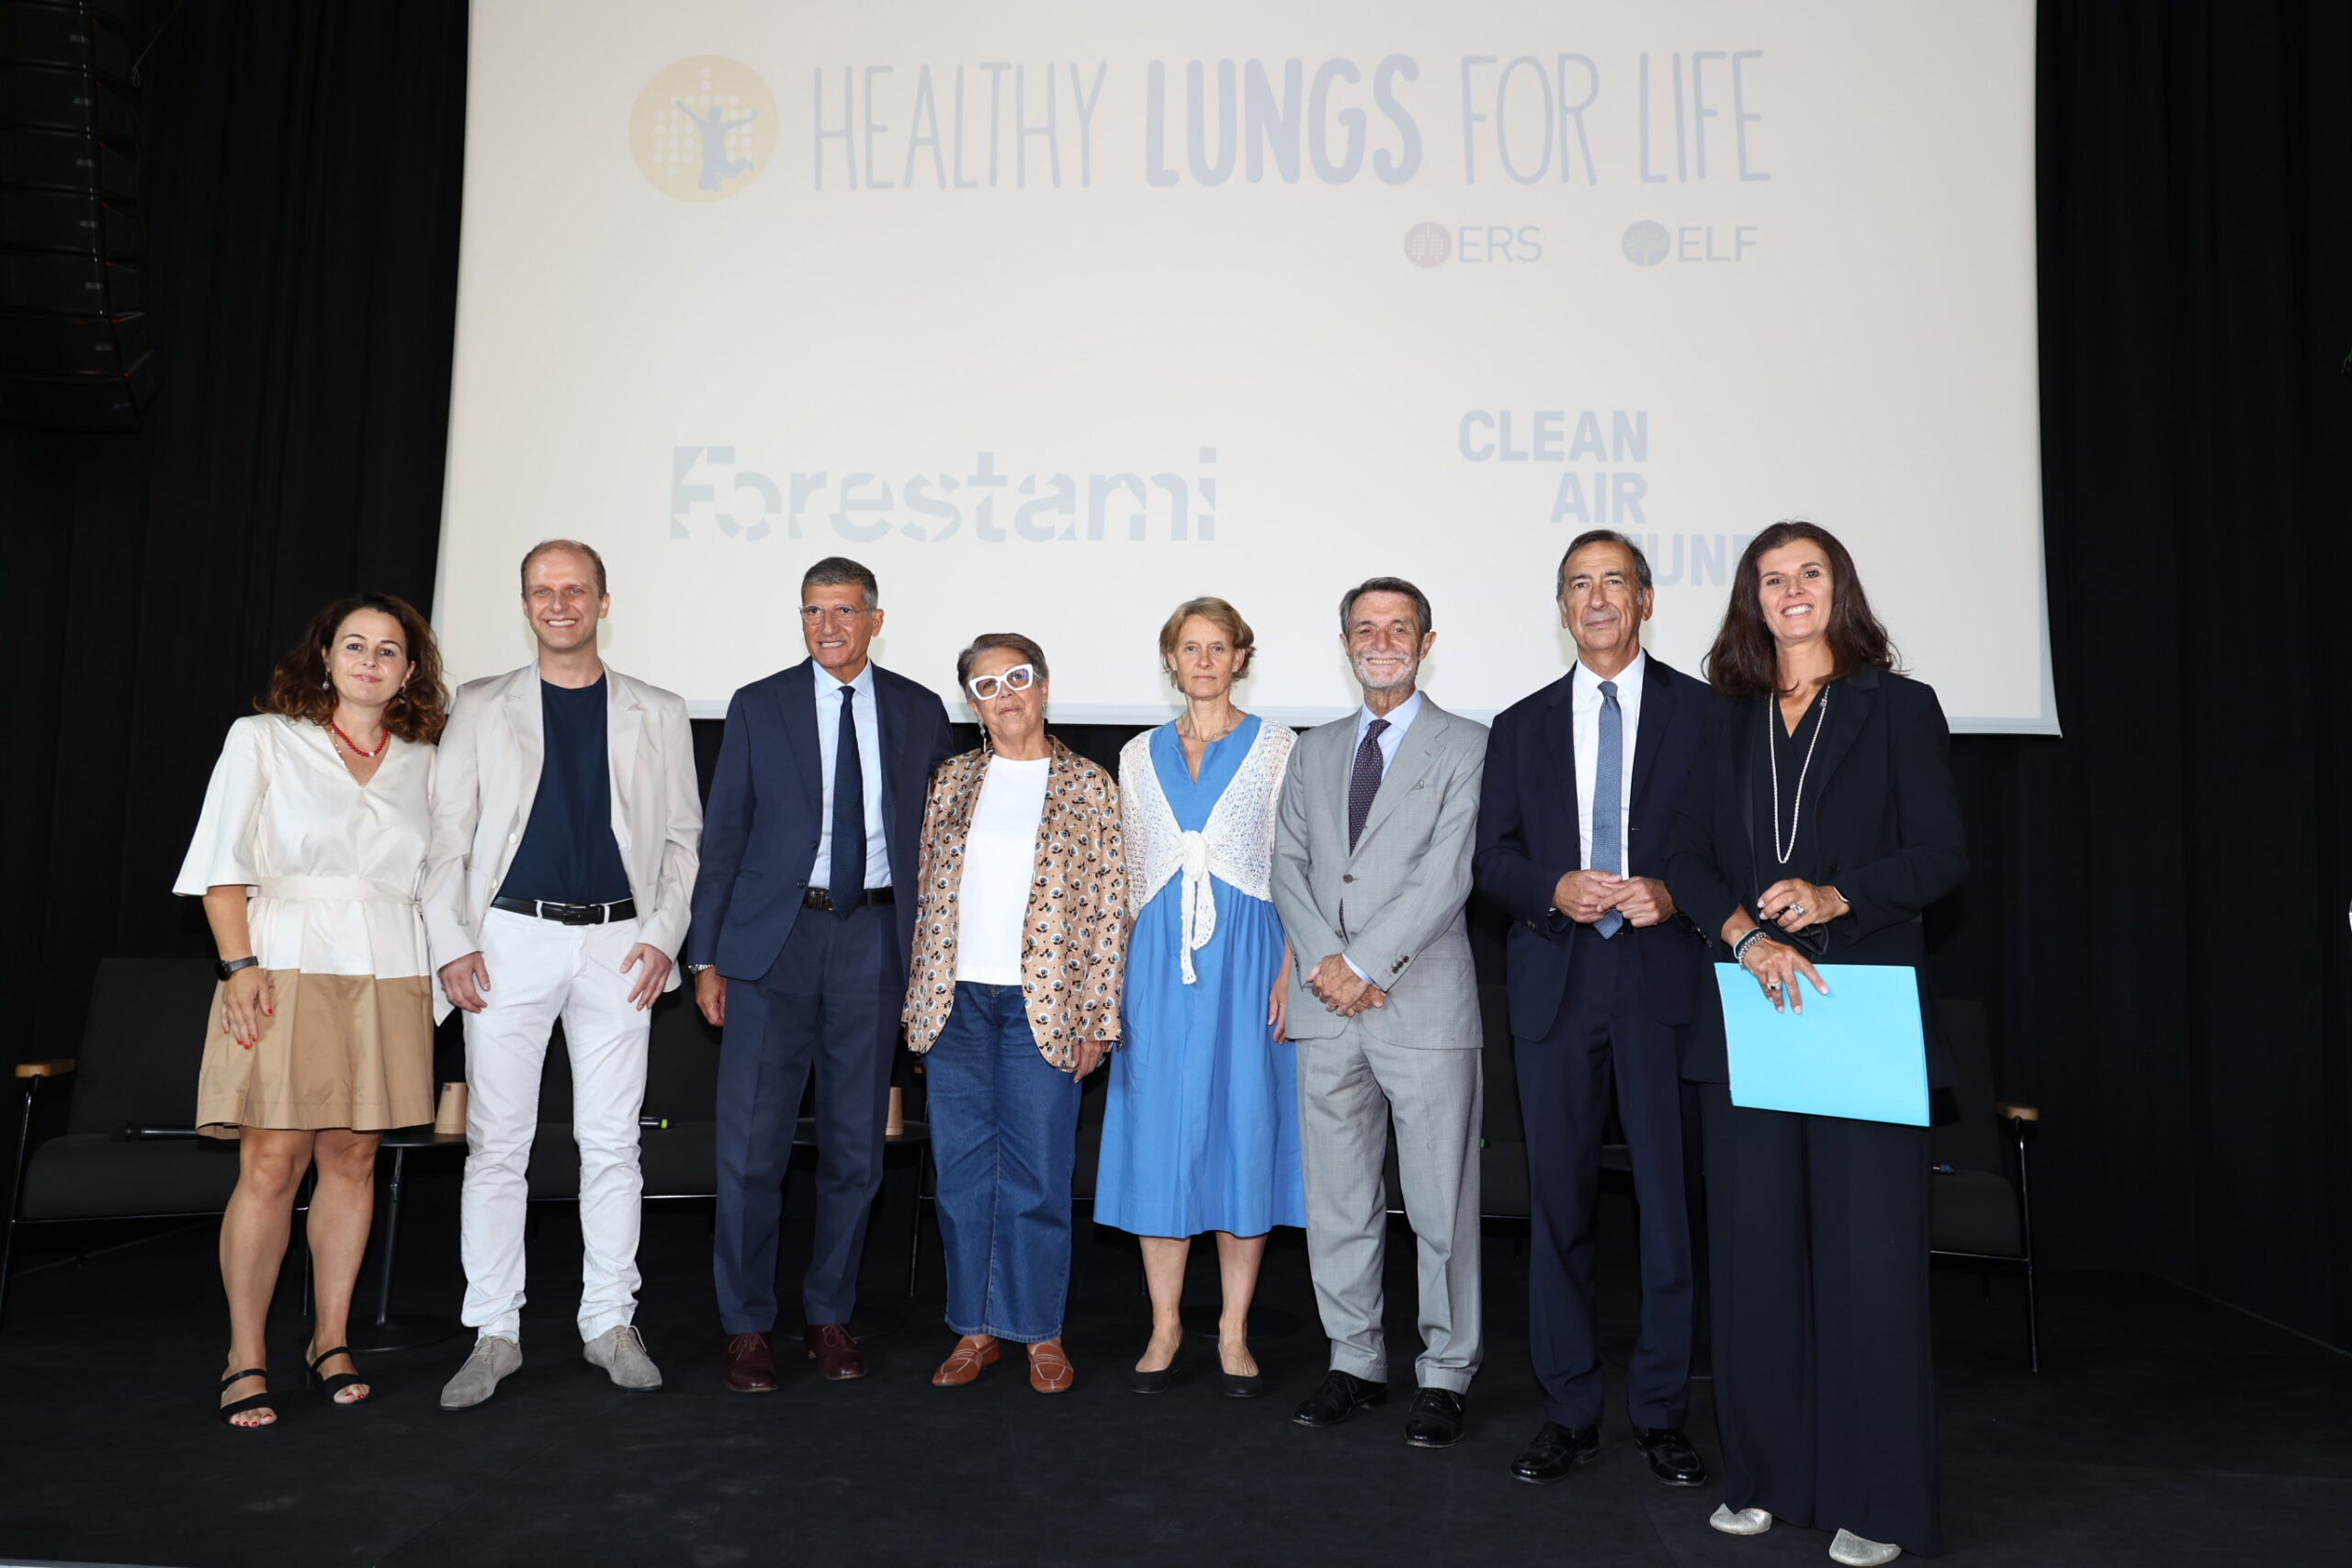 Arriva a Milano Healthy Lungs for Life, la campagna globale di sensibilizzazione sull’importanza della salute dei polmoni